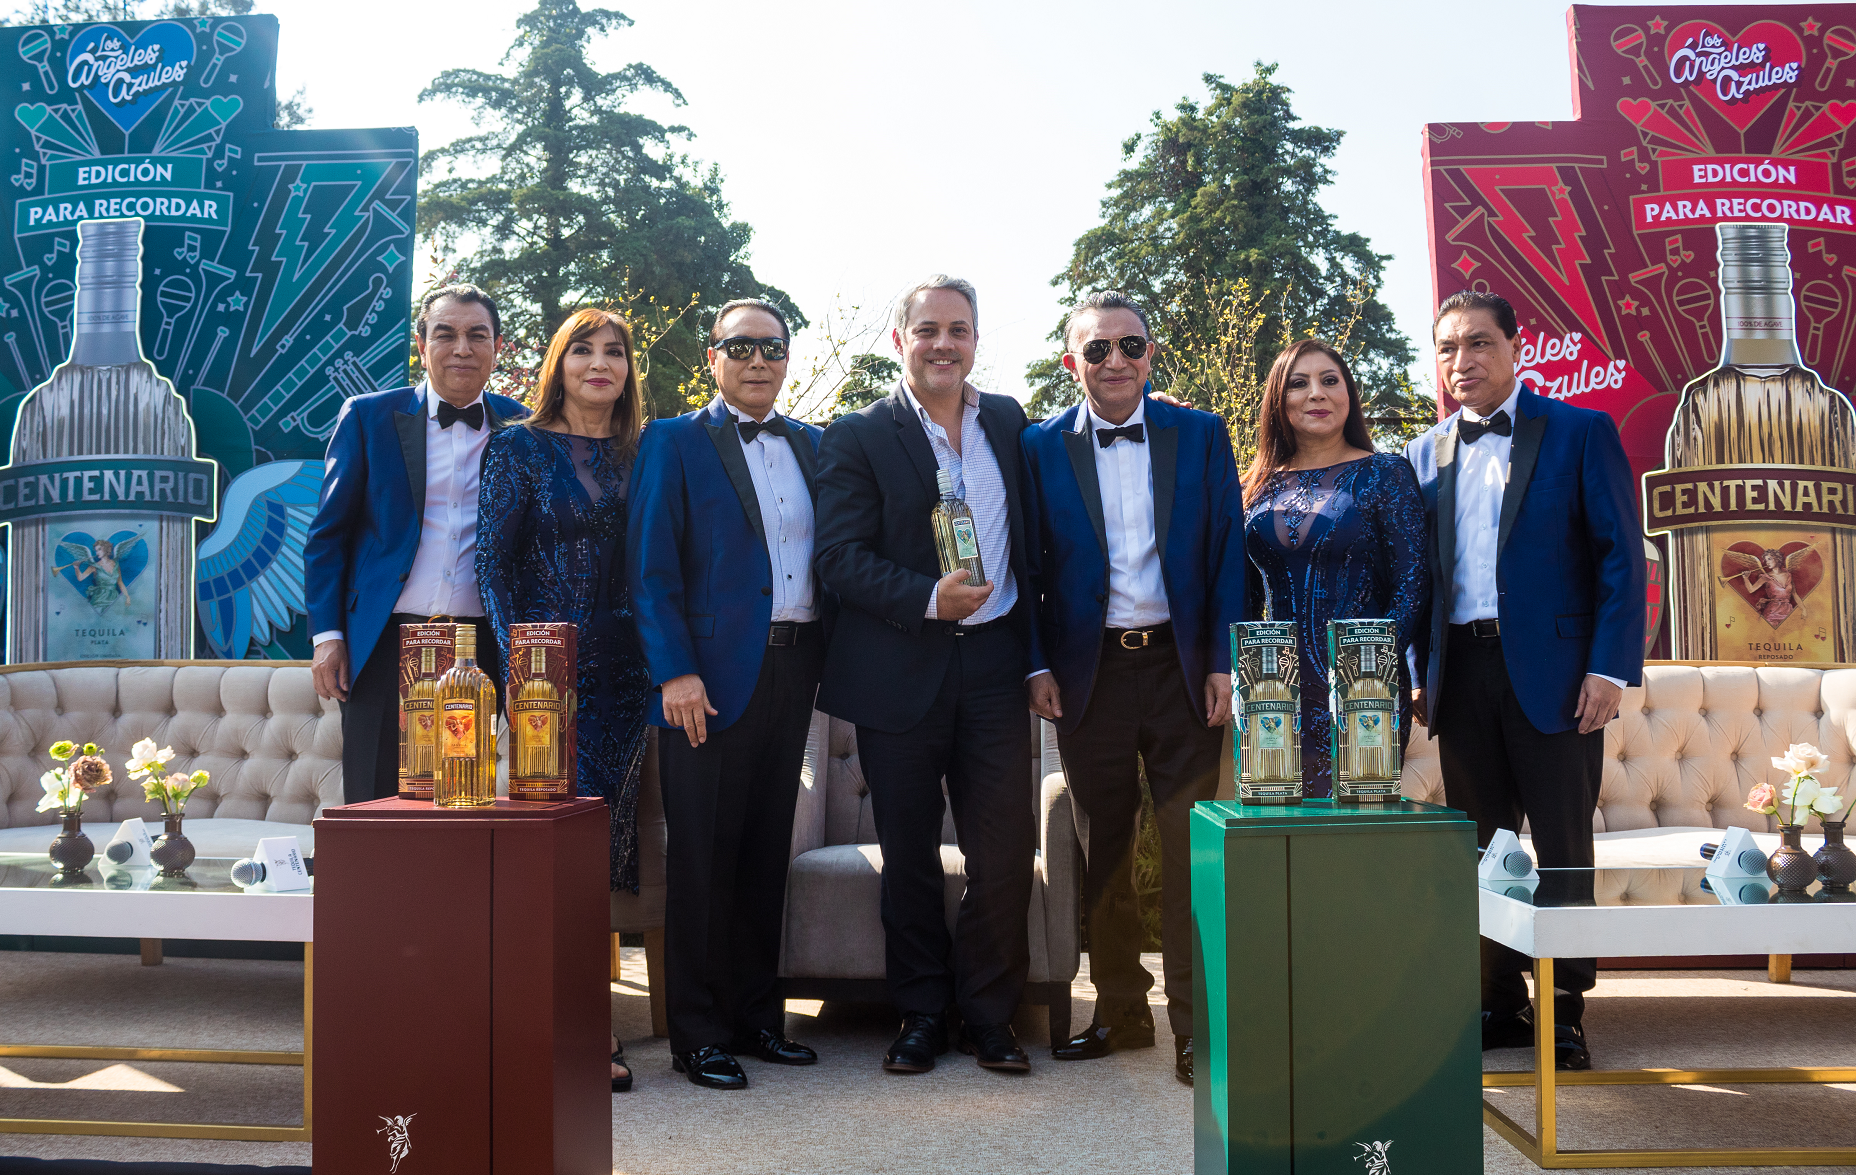 Tequila Centenario y Los Angeles Azules concluyen su alianza que rindio homenaje al tequila y a las familias mexicanas develan una botella edicion especial